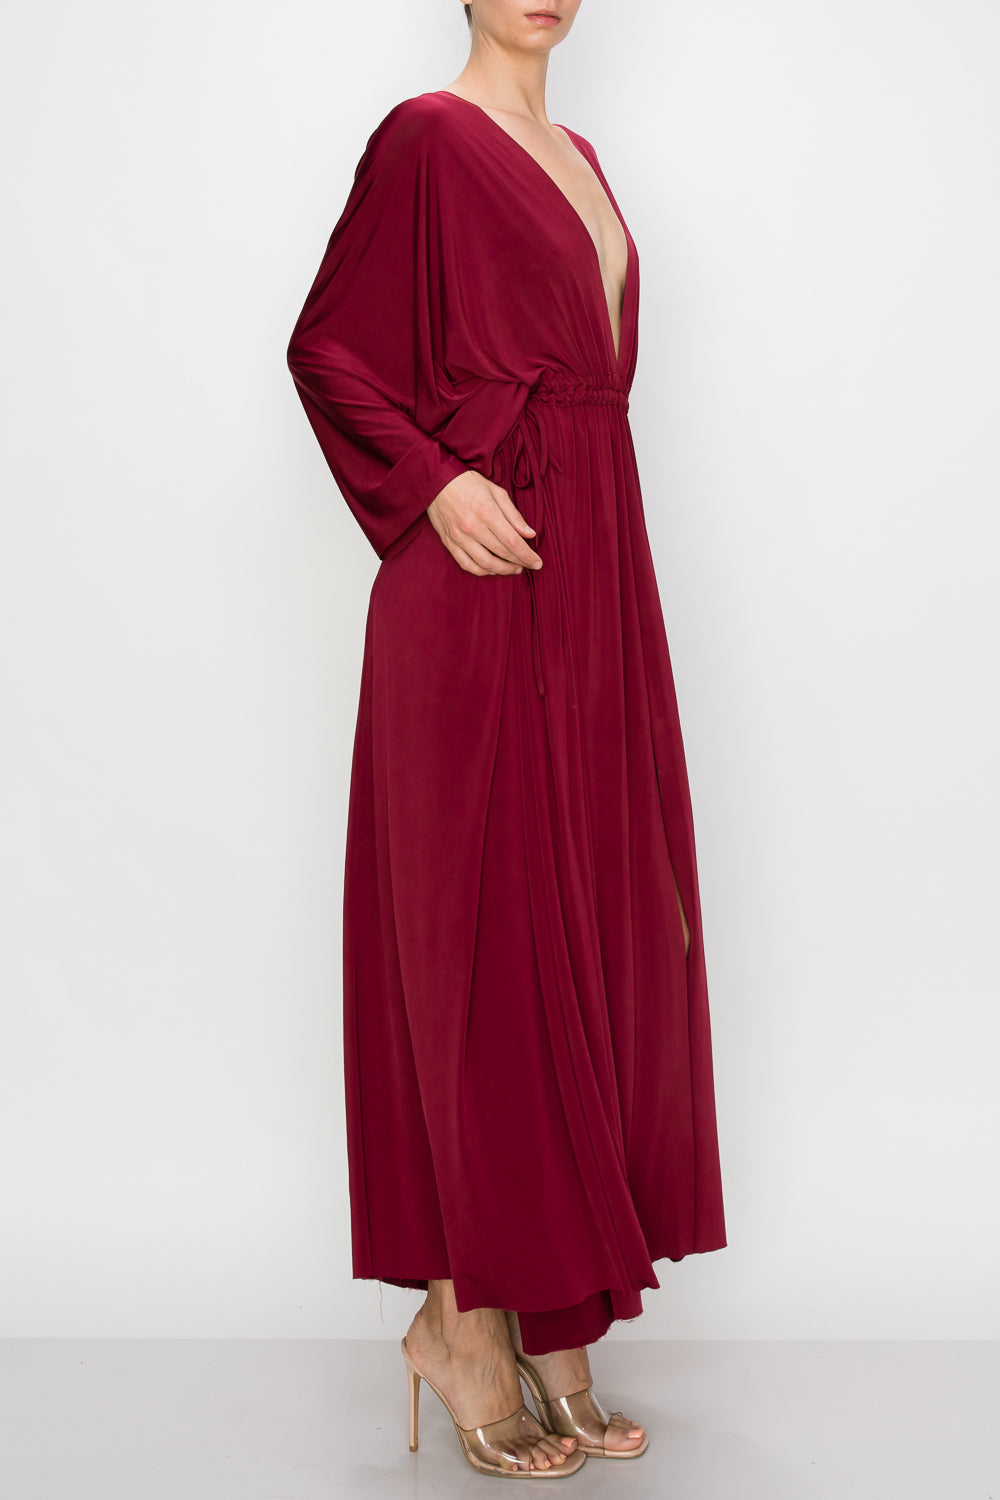 Goddess Convertible Gown Maxi Dress